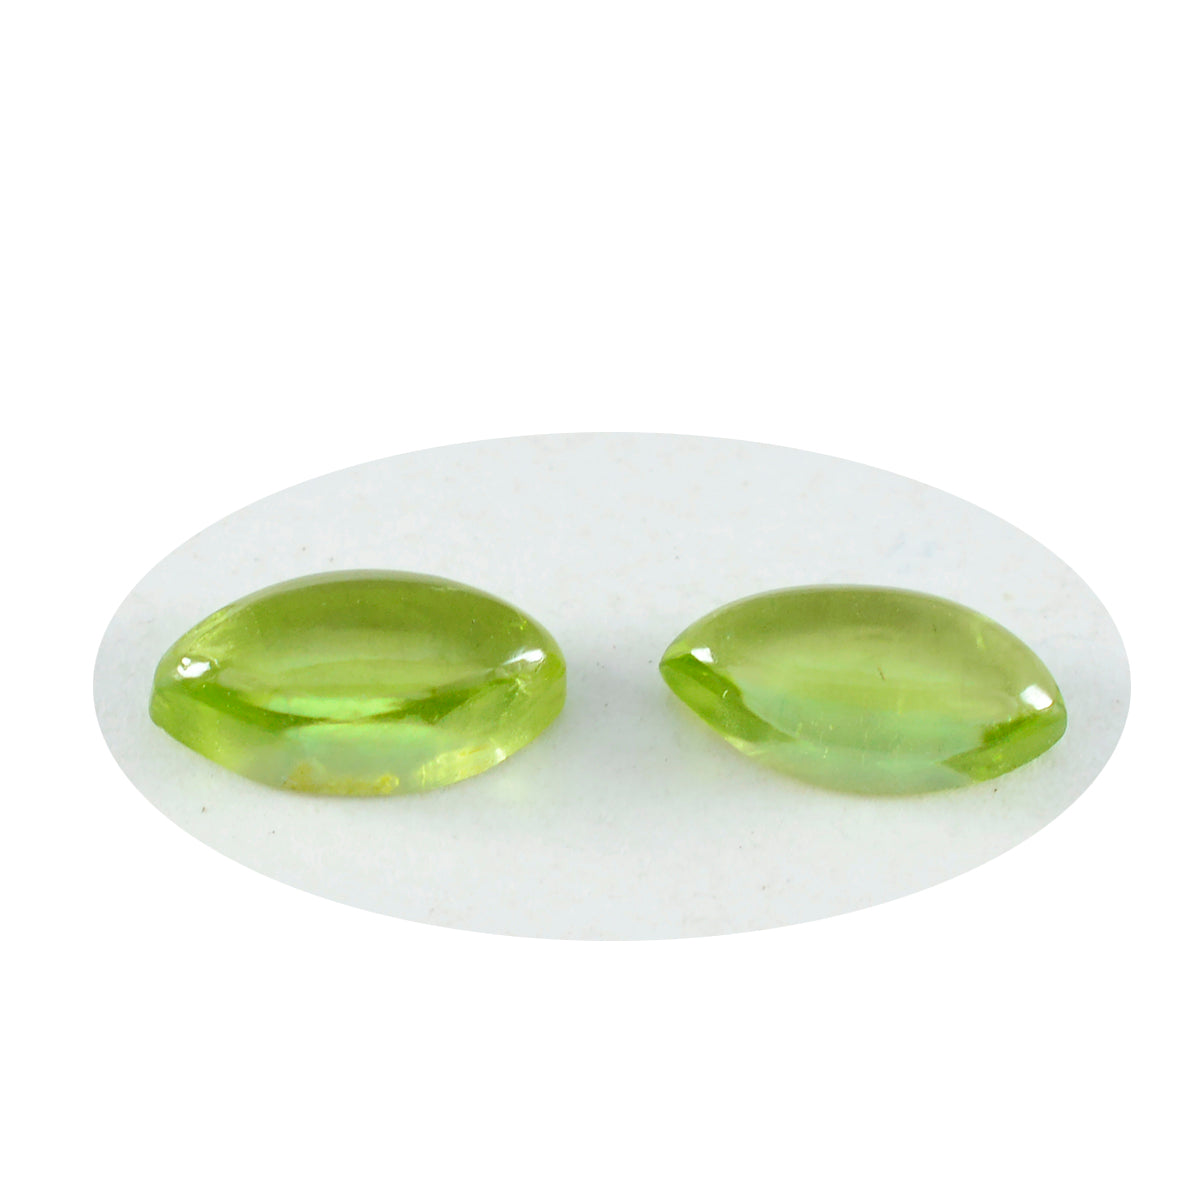 riyogems 1шт зеленый перидот кабошон 7x14 мм форма маркиза красивый качественный драгоценный камень